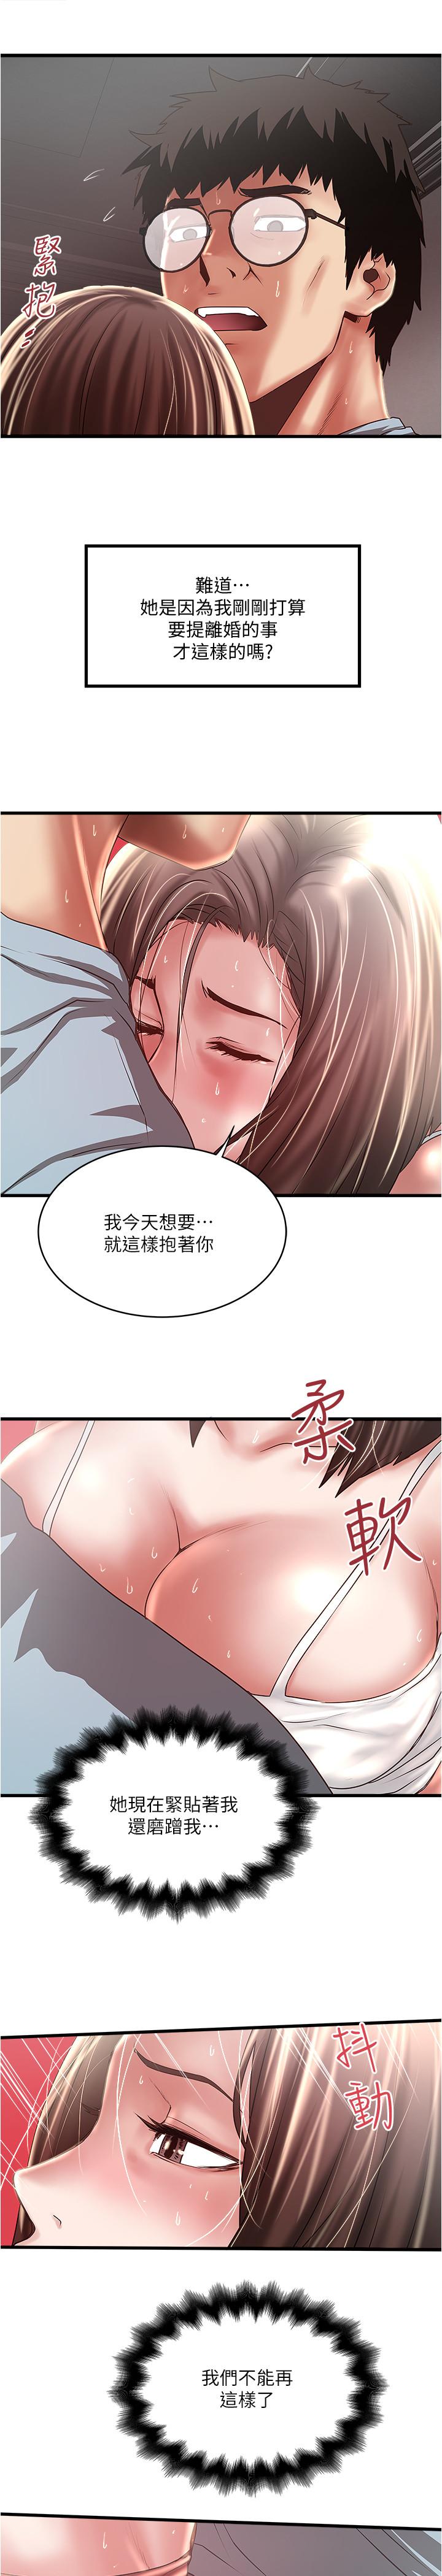 韩国污漫画 下女,初希 第73话-被撕烂的紧身裤 21